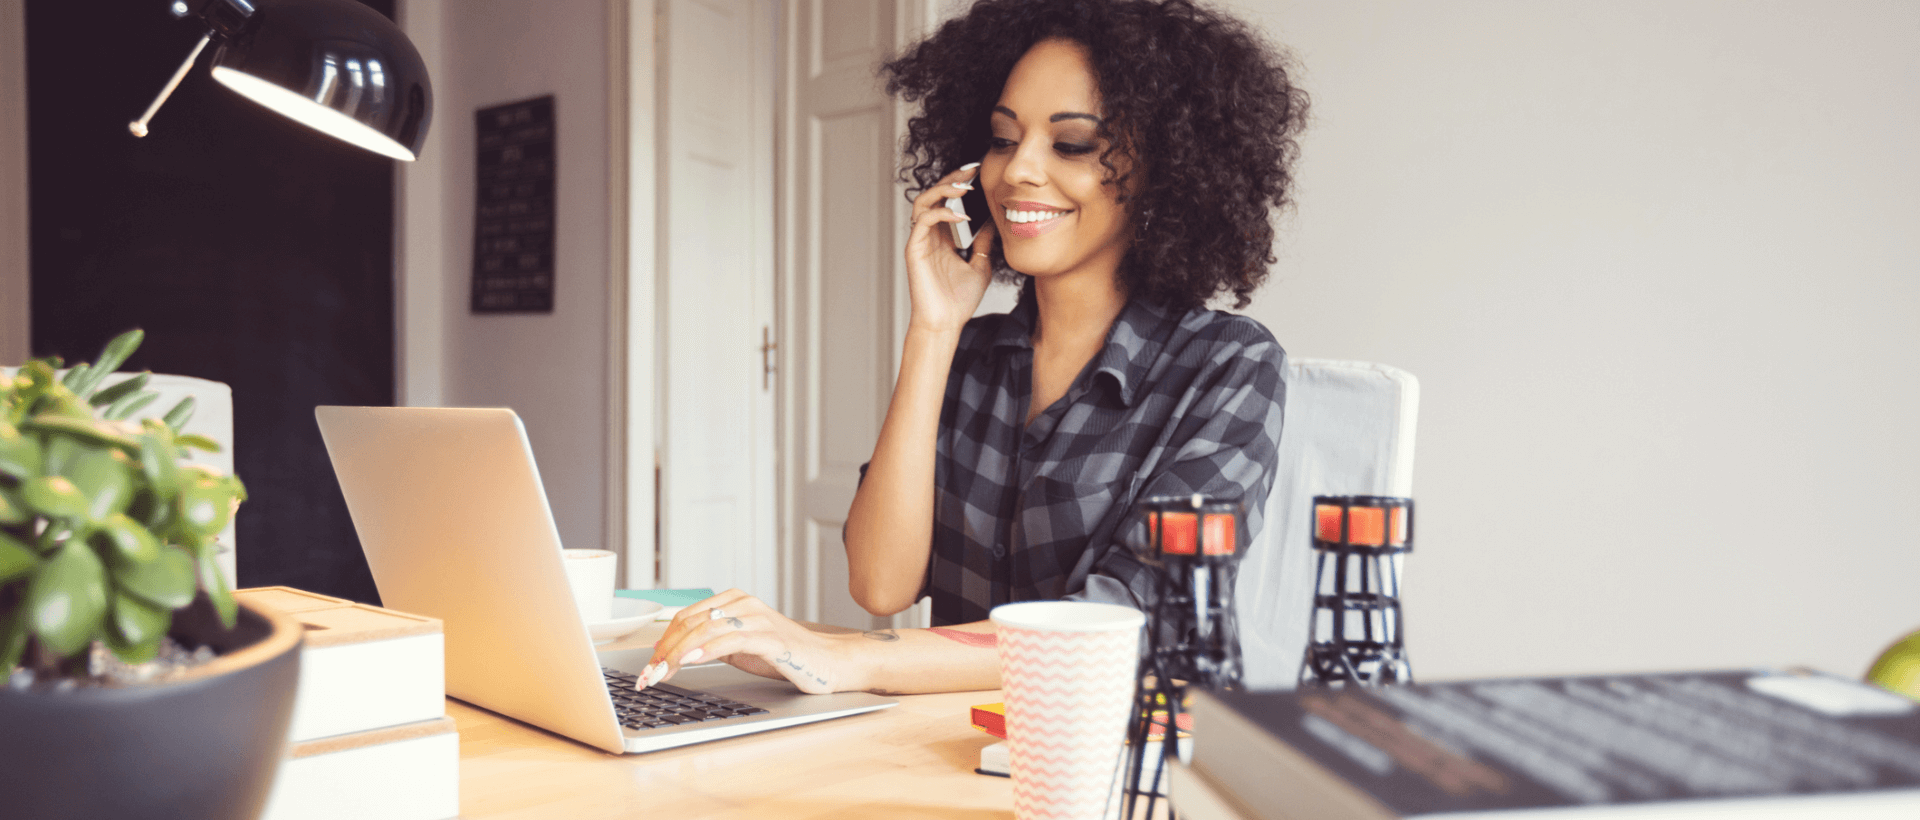 Uma mulher jovem faz uma chamada telefónica com o seu smartphone no seu local de trabalho, com a outra mão escreve no seu portátil, num ambiente de escritório